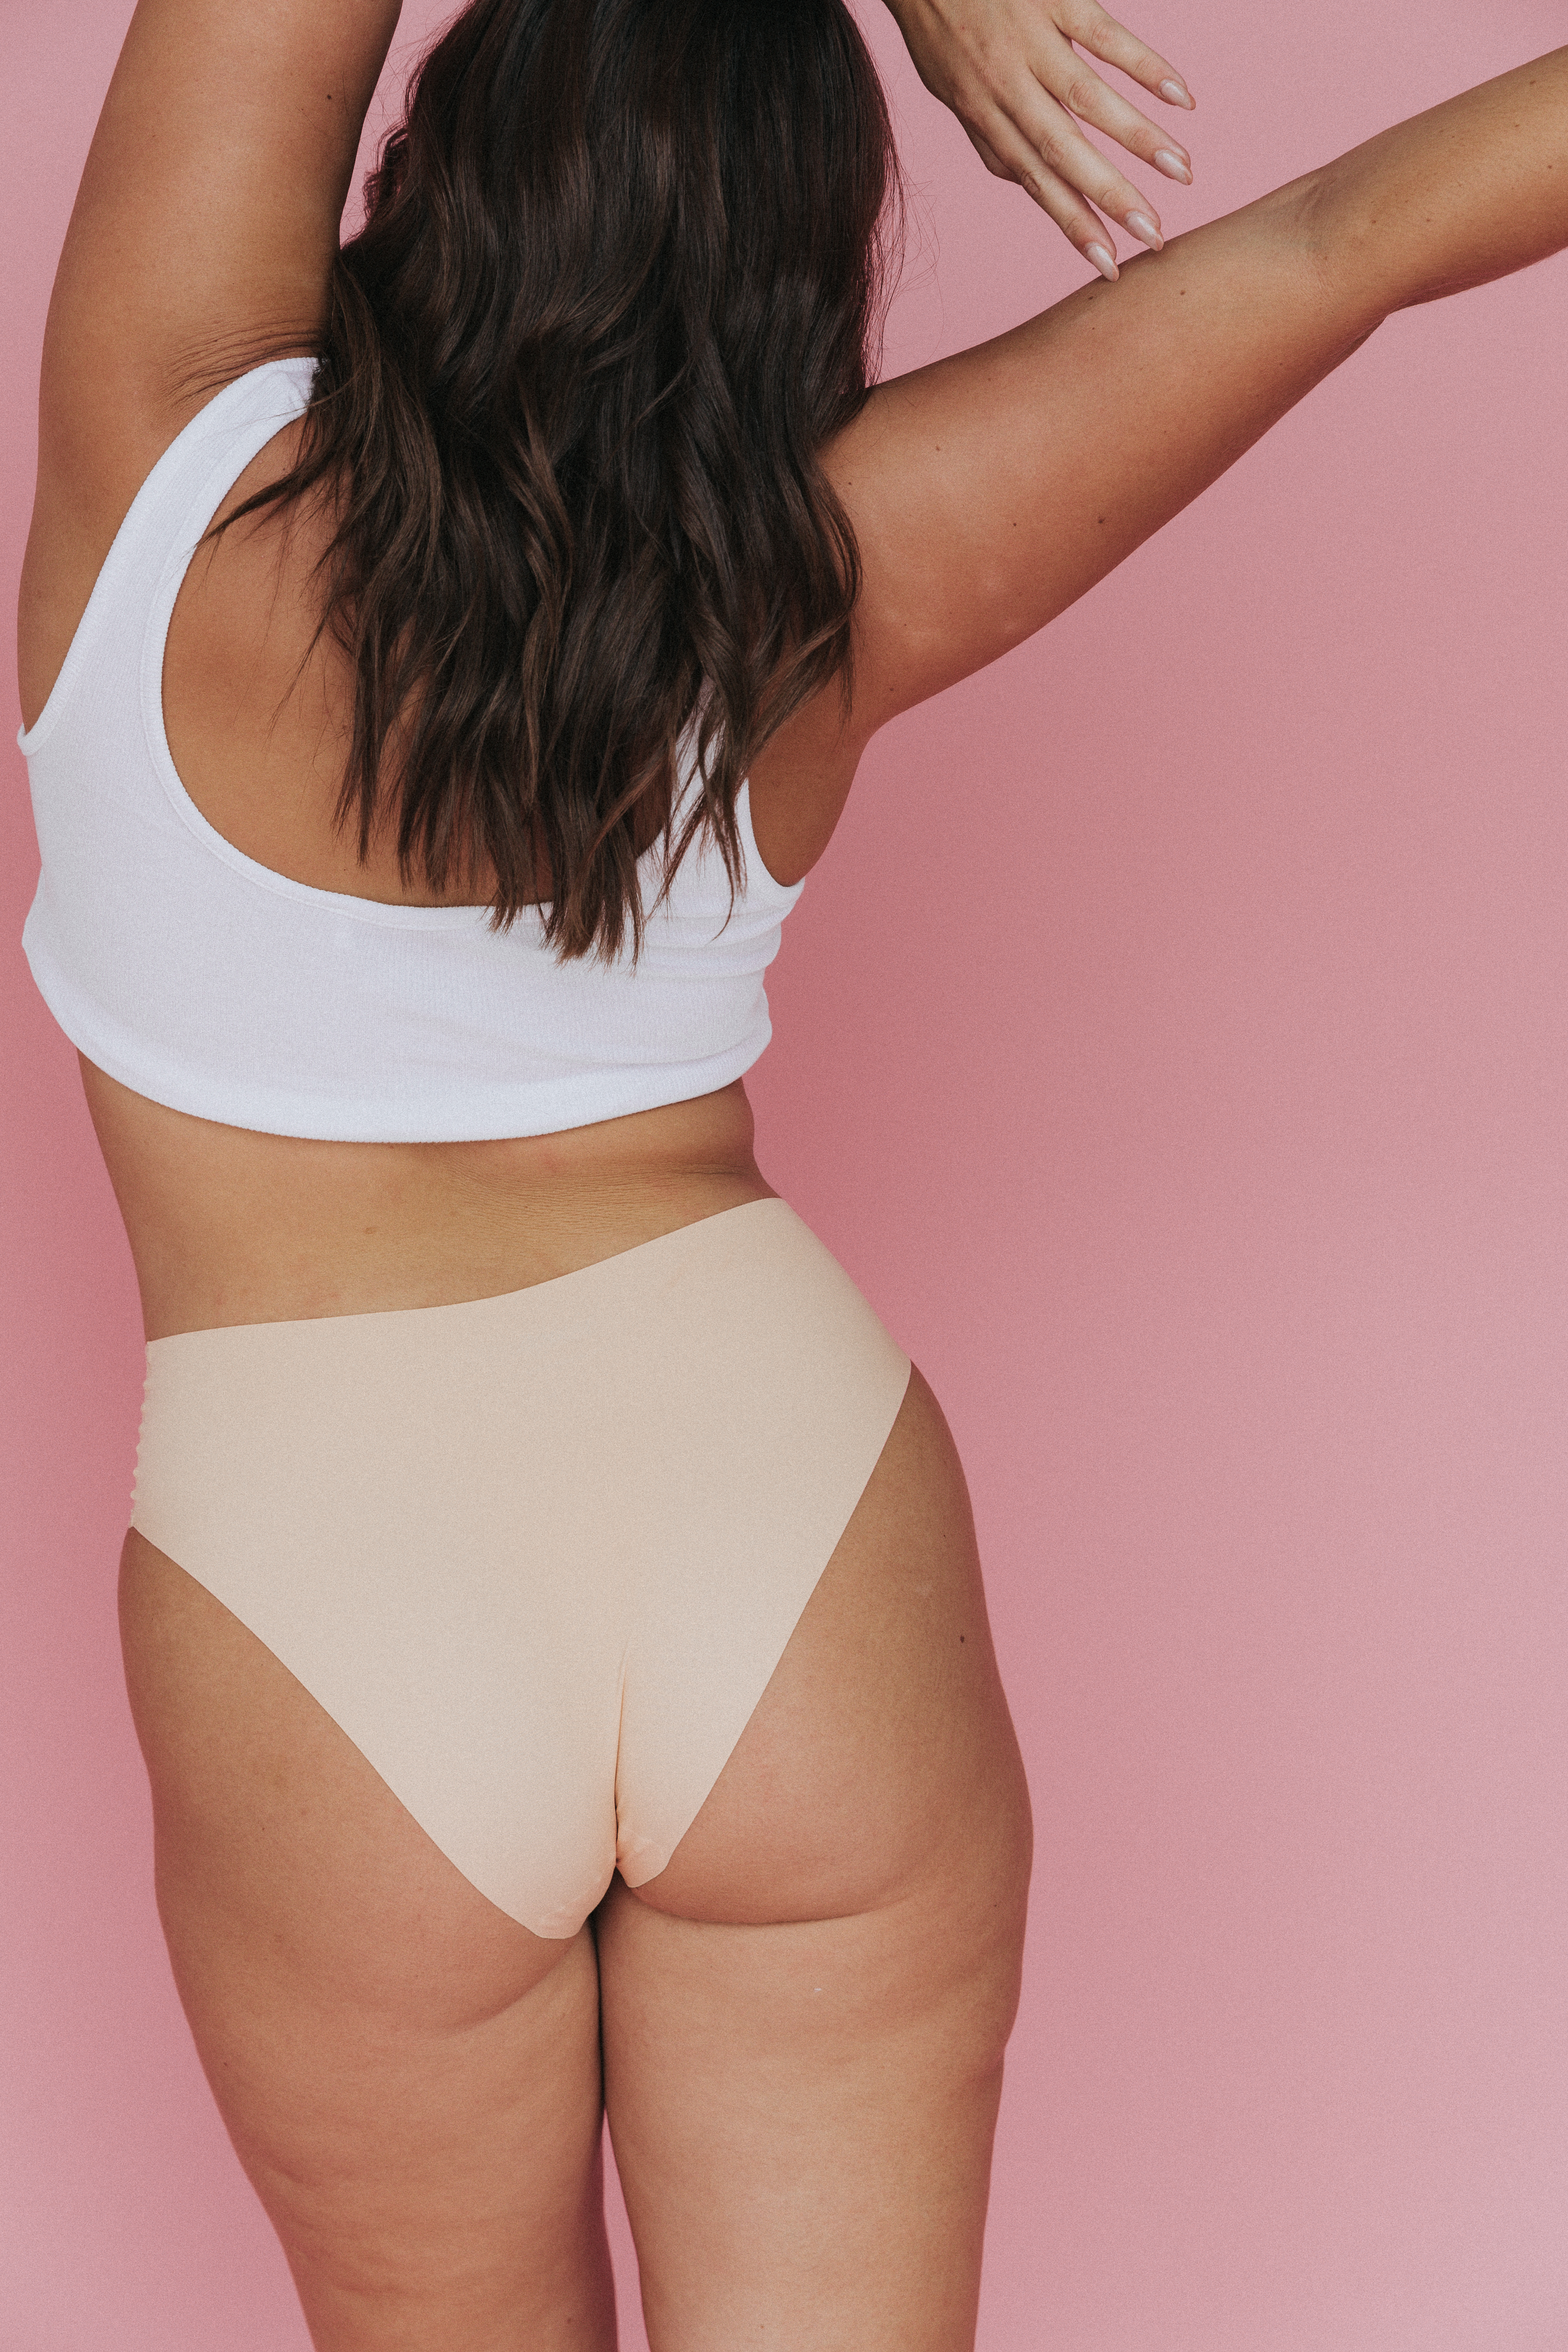 https://graziamagazine.com/wp-content/uploads/2021/02/Peach-Underwear-3.jpg